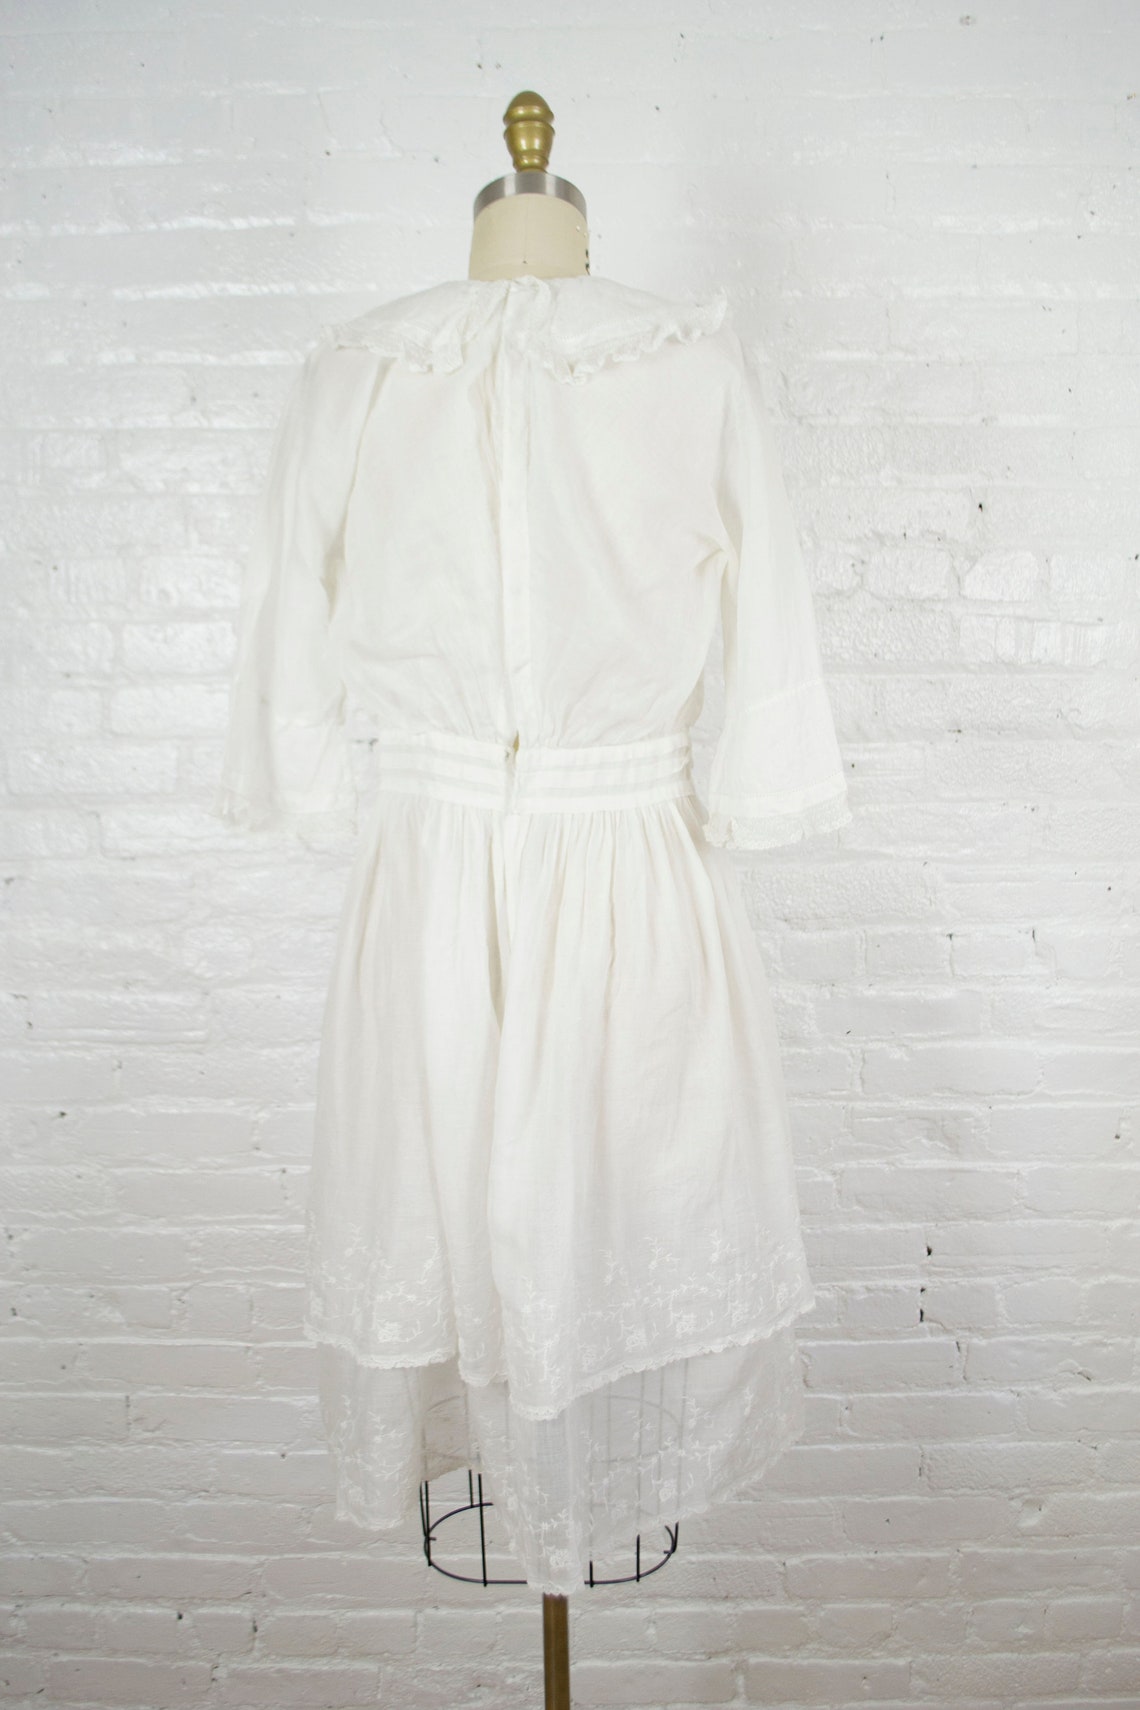 Edwardian tunic dress . 1900-1920s antique white sheer cotton | Etsy